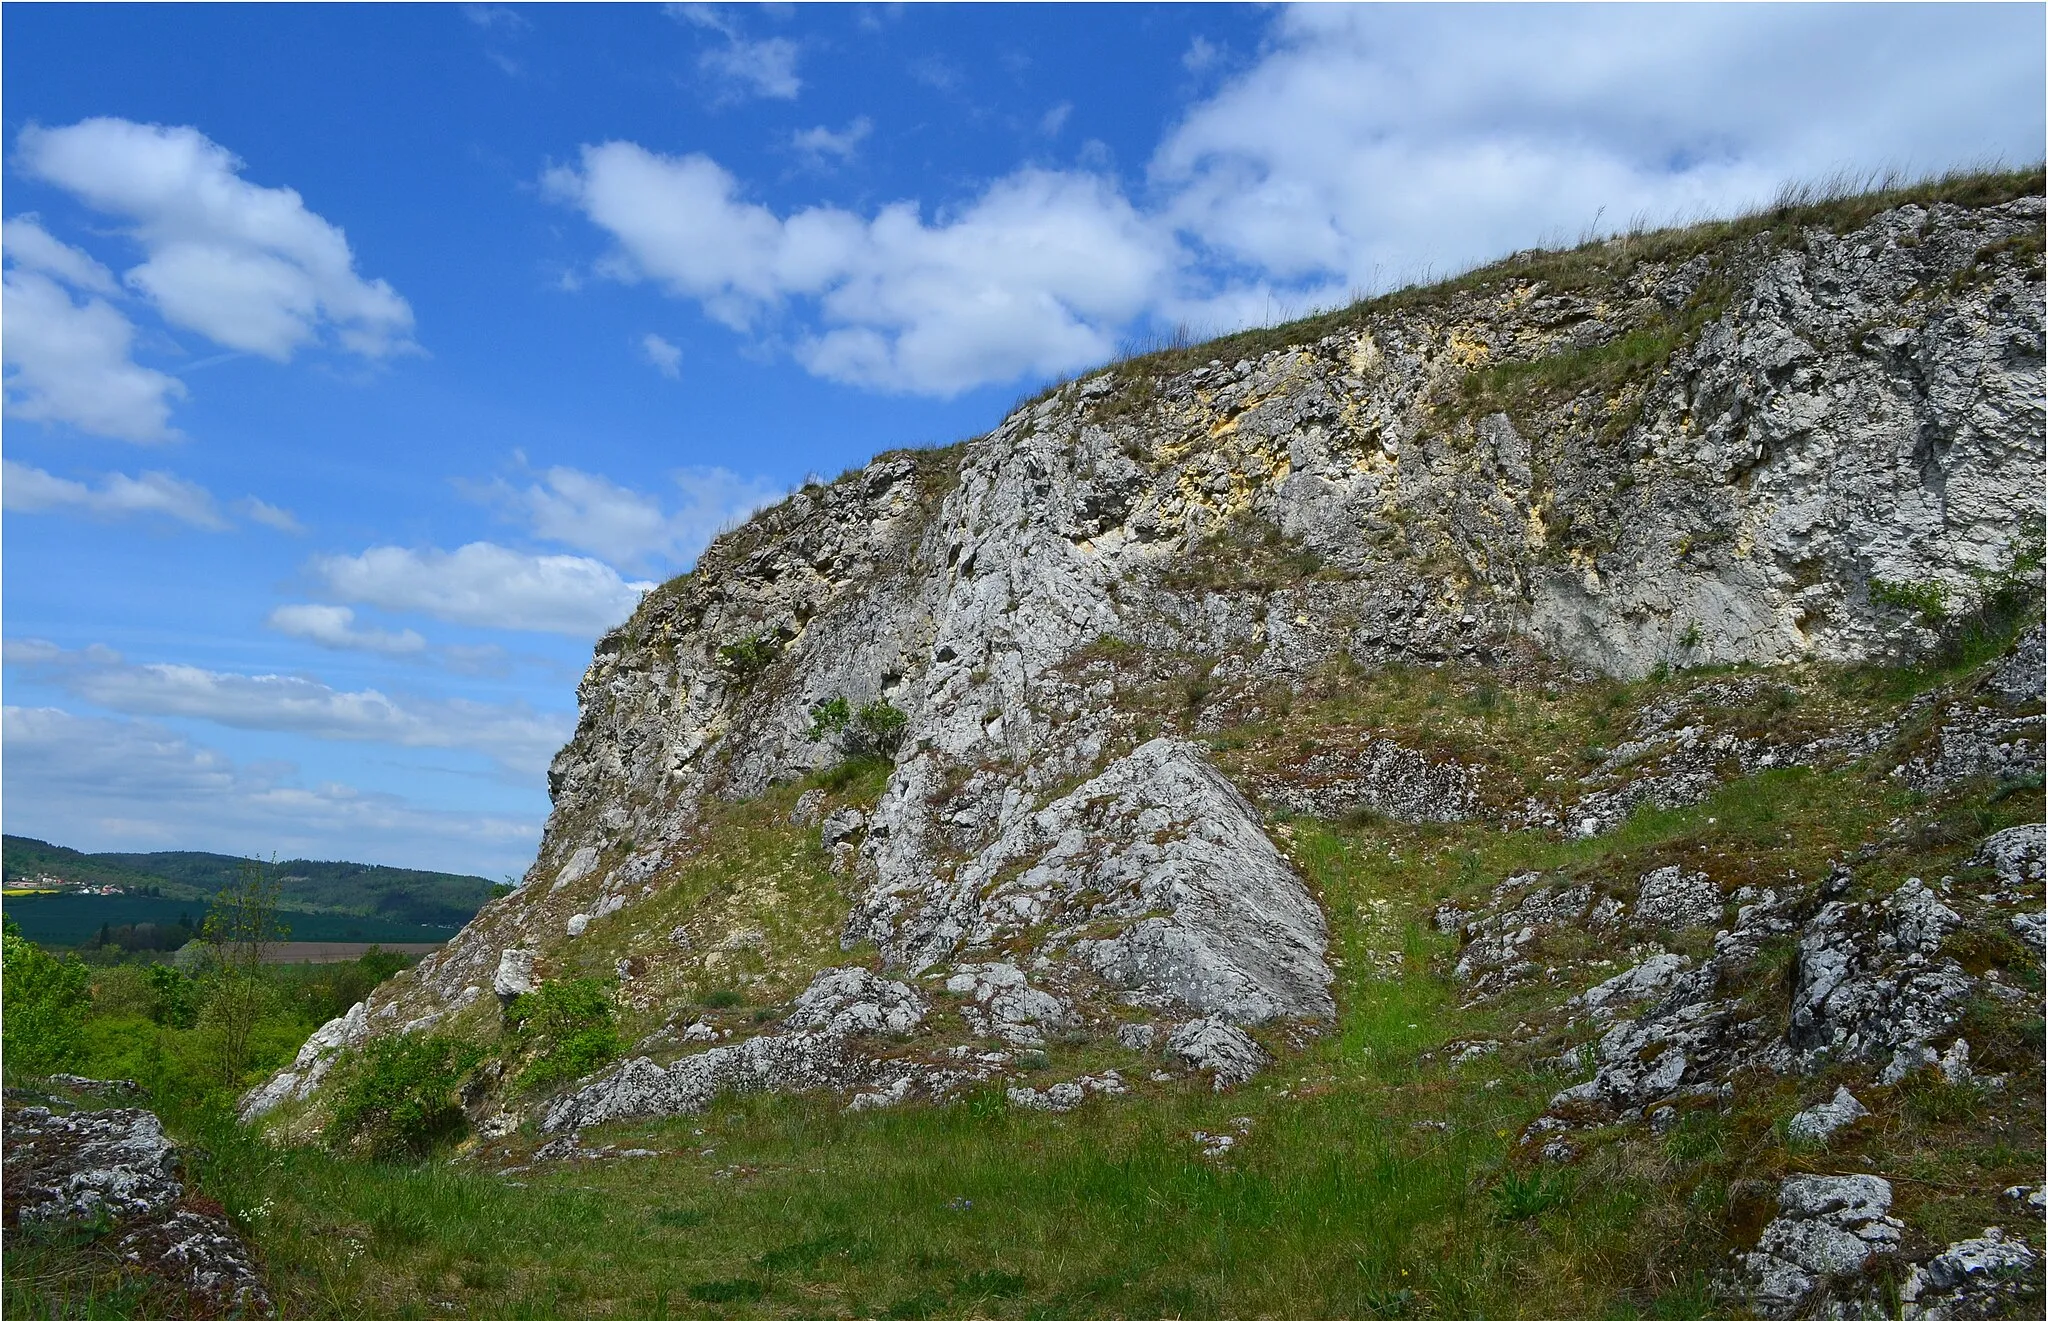 Photo showing: Přírodní památka Malhostovická pecka byla vyhlášena v roce 1980 na ploše 1,85 ha v k.ú. Malhostovice a je tvořena vyvýšeným skalním útvarem z devonských vápenců (300-332 m n.m.) se skalní stepí a teplomilnými stepními společenstvy s roztroušenými dřevinami při úpatí. Lokalita je obklopena intenzivně obhospodařovanou zemědělskou půdou. Přírodní památka je především stepní lokalitou a dřeviny jsou v území zastoupeny jen roztroušeně, především při jižním úpatí. Především jde o více druhů keřů: růži šípkovou, svídu krvavou, trnku obecnou vč. některých dalších. Také tu najdeme některé druhy ovocných stromů.